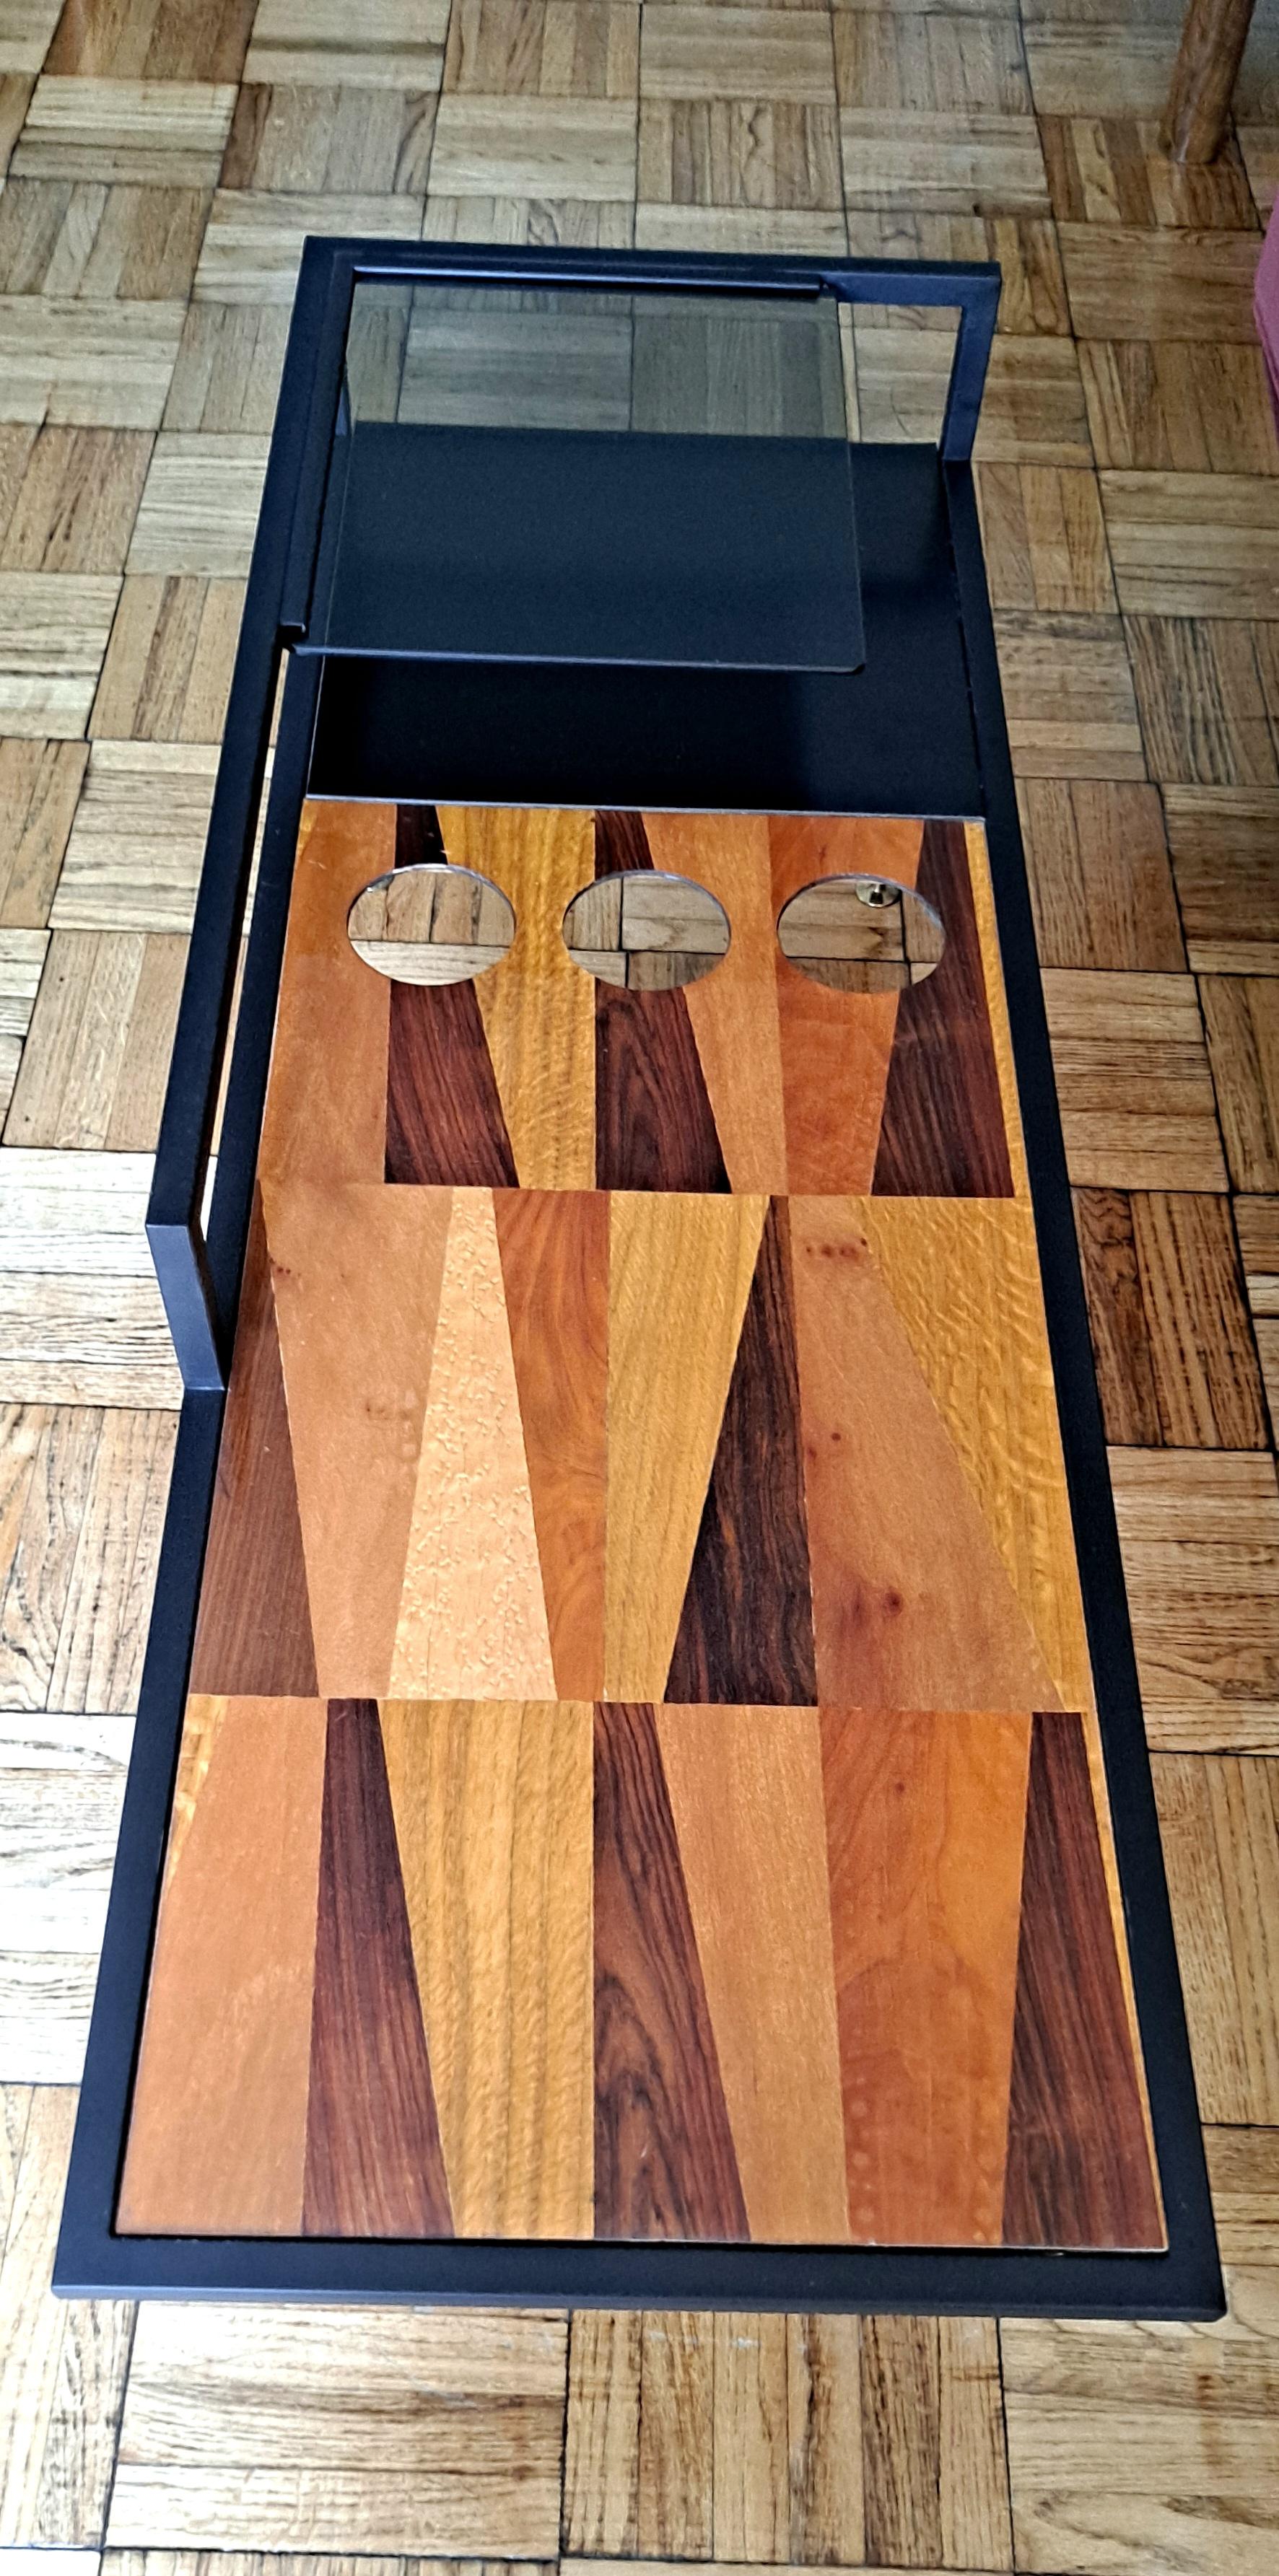 Table cocktail-café, bois Inline, verre fumé. Base en métal noir avec les pieds en laiton. Design/One par Gimo Fero, artiste italien chevronné. La deuxième hauteur de l'étagère en verre est de 19,5 pouces.


